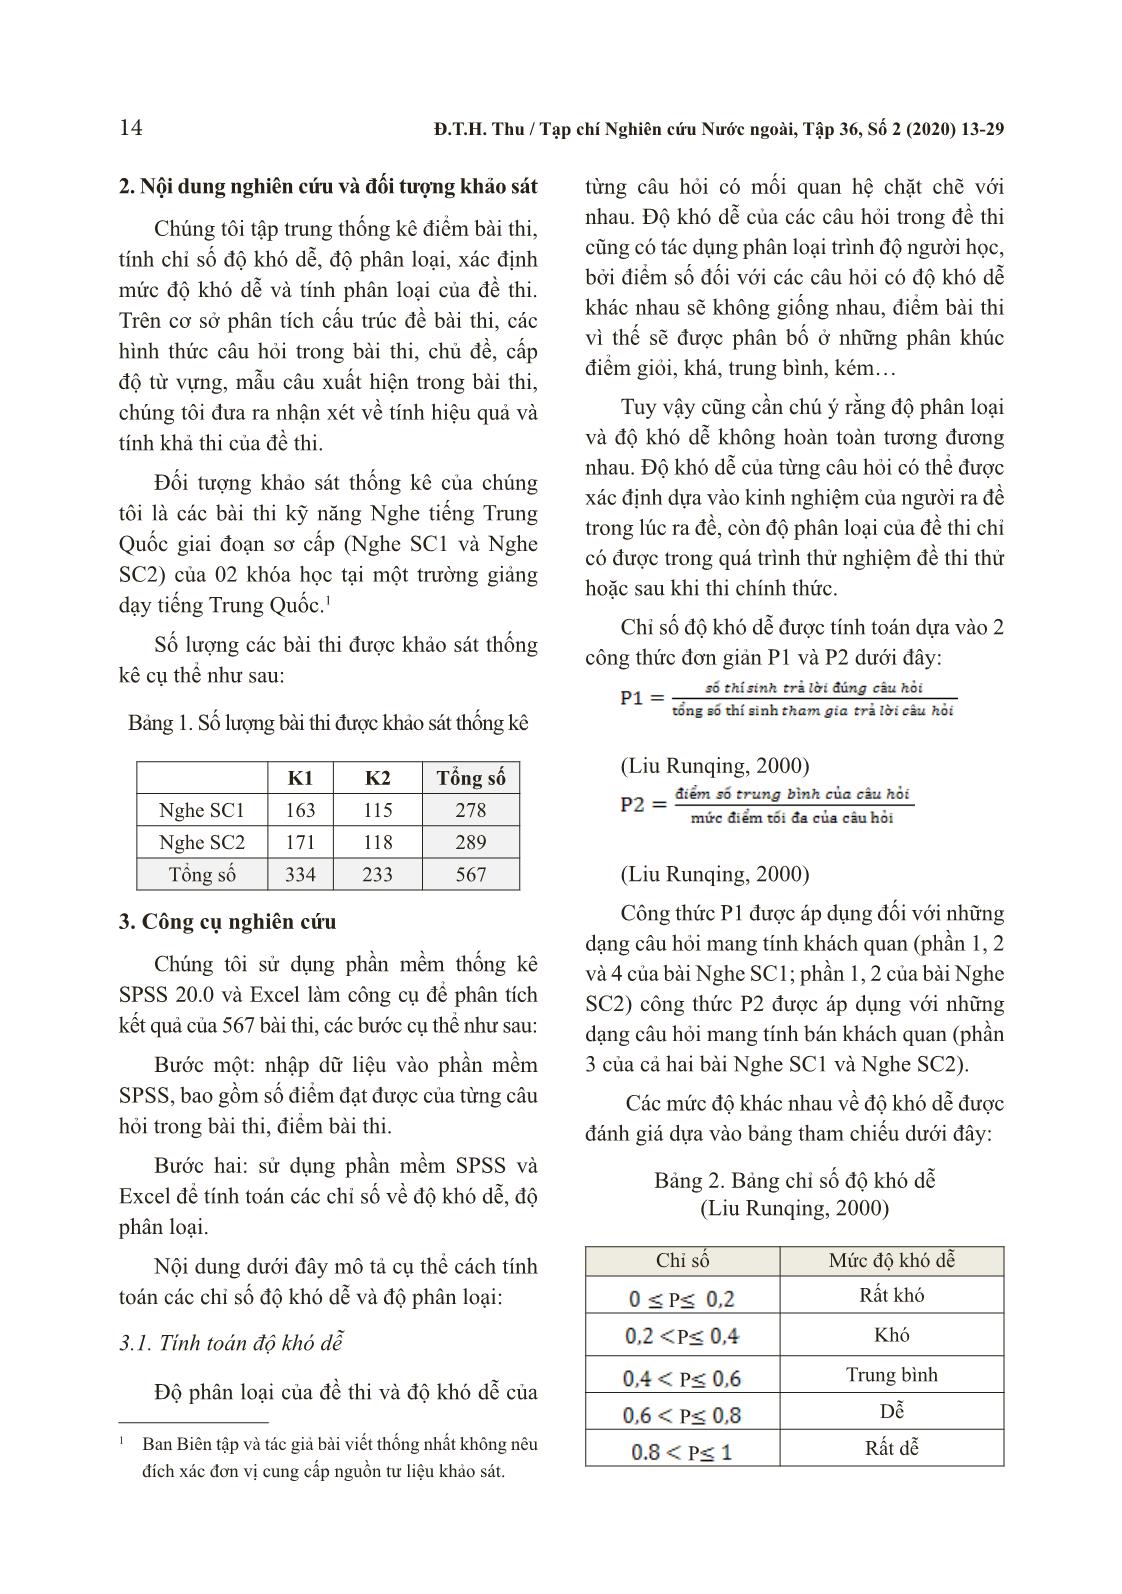 Phân tích kết quả bài thi nghe tiếng Trung Quốc trang 2